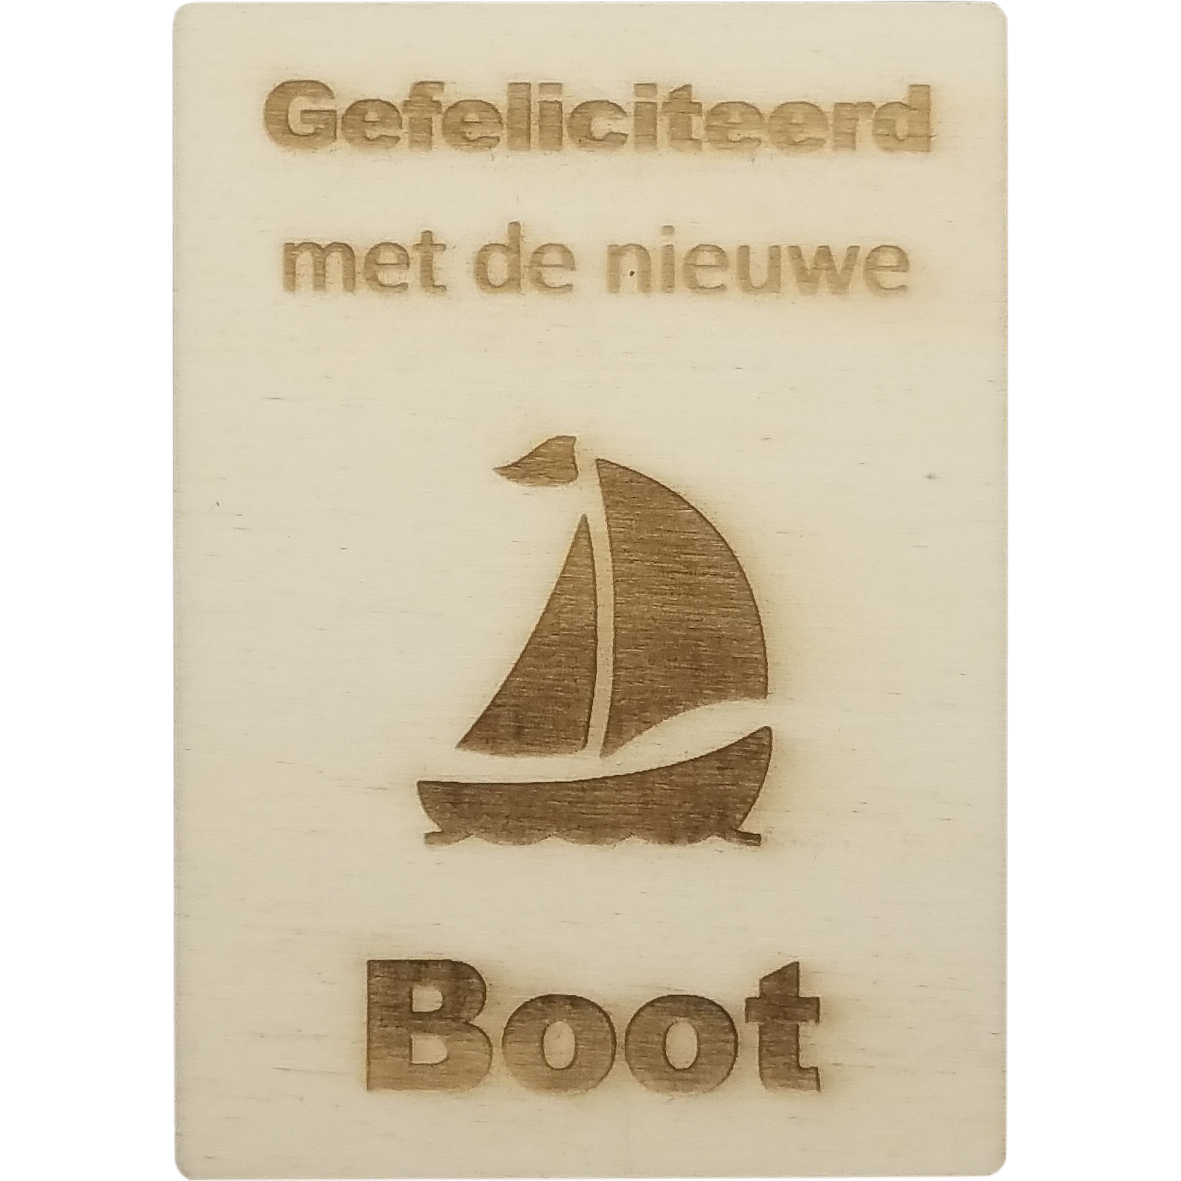 aanpassen duizelig Aannames, aannames. Raad eens MemoryGift: Houten Kaart A6: Gefeliciteerd met de nieuwe boot (zeilboot) -  CutterTeam.nl